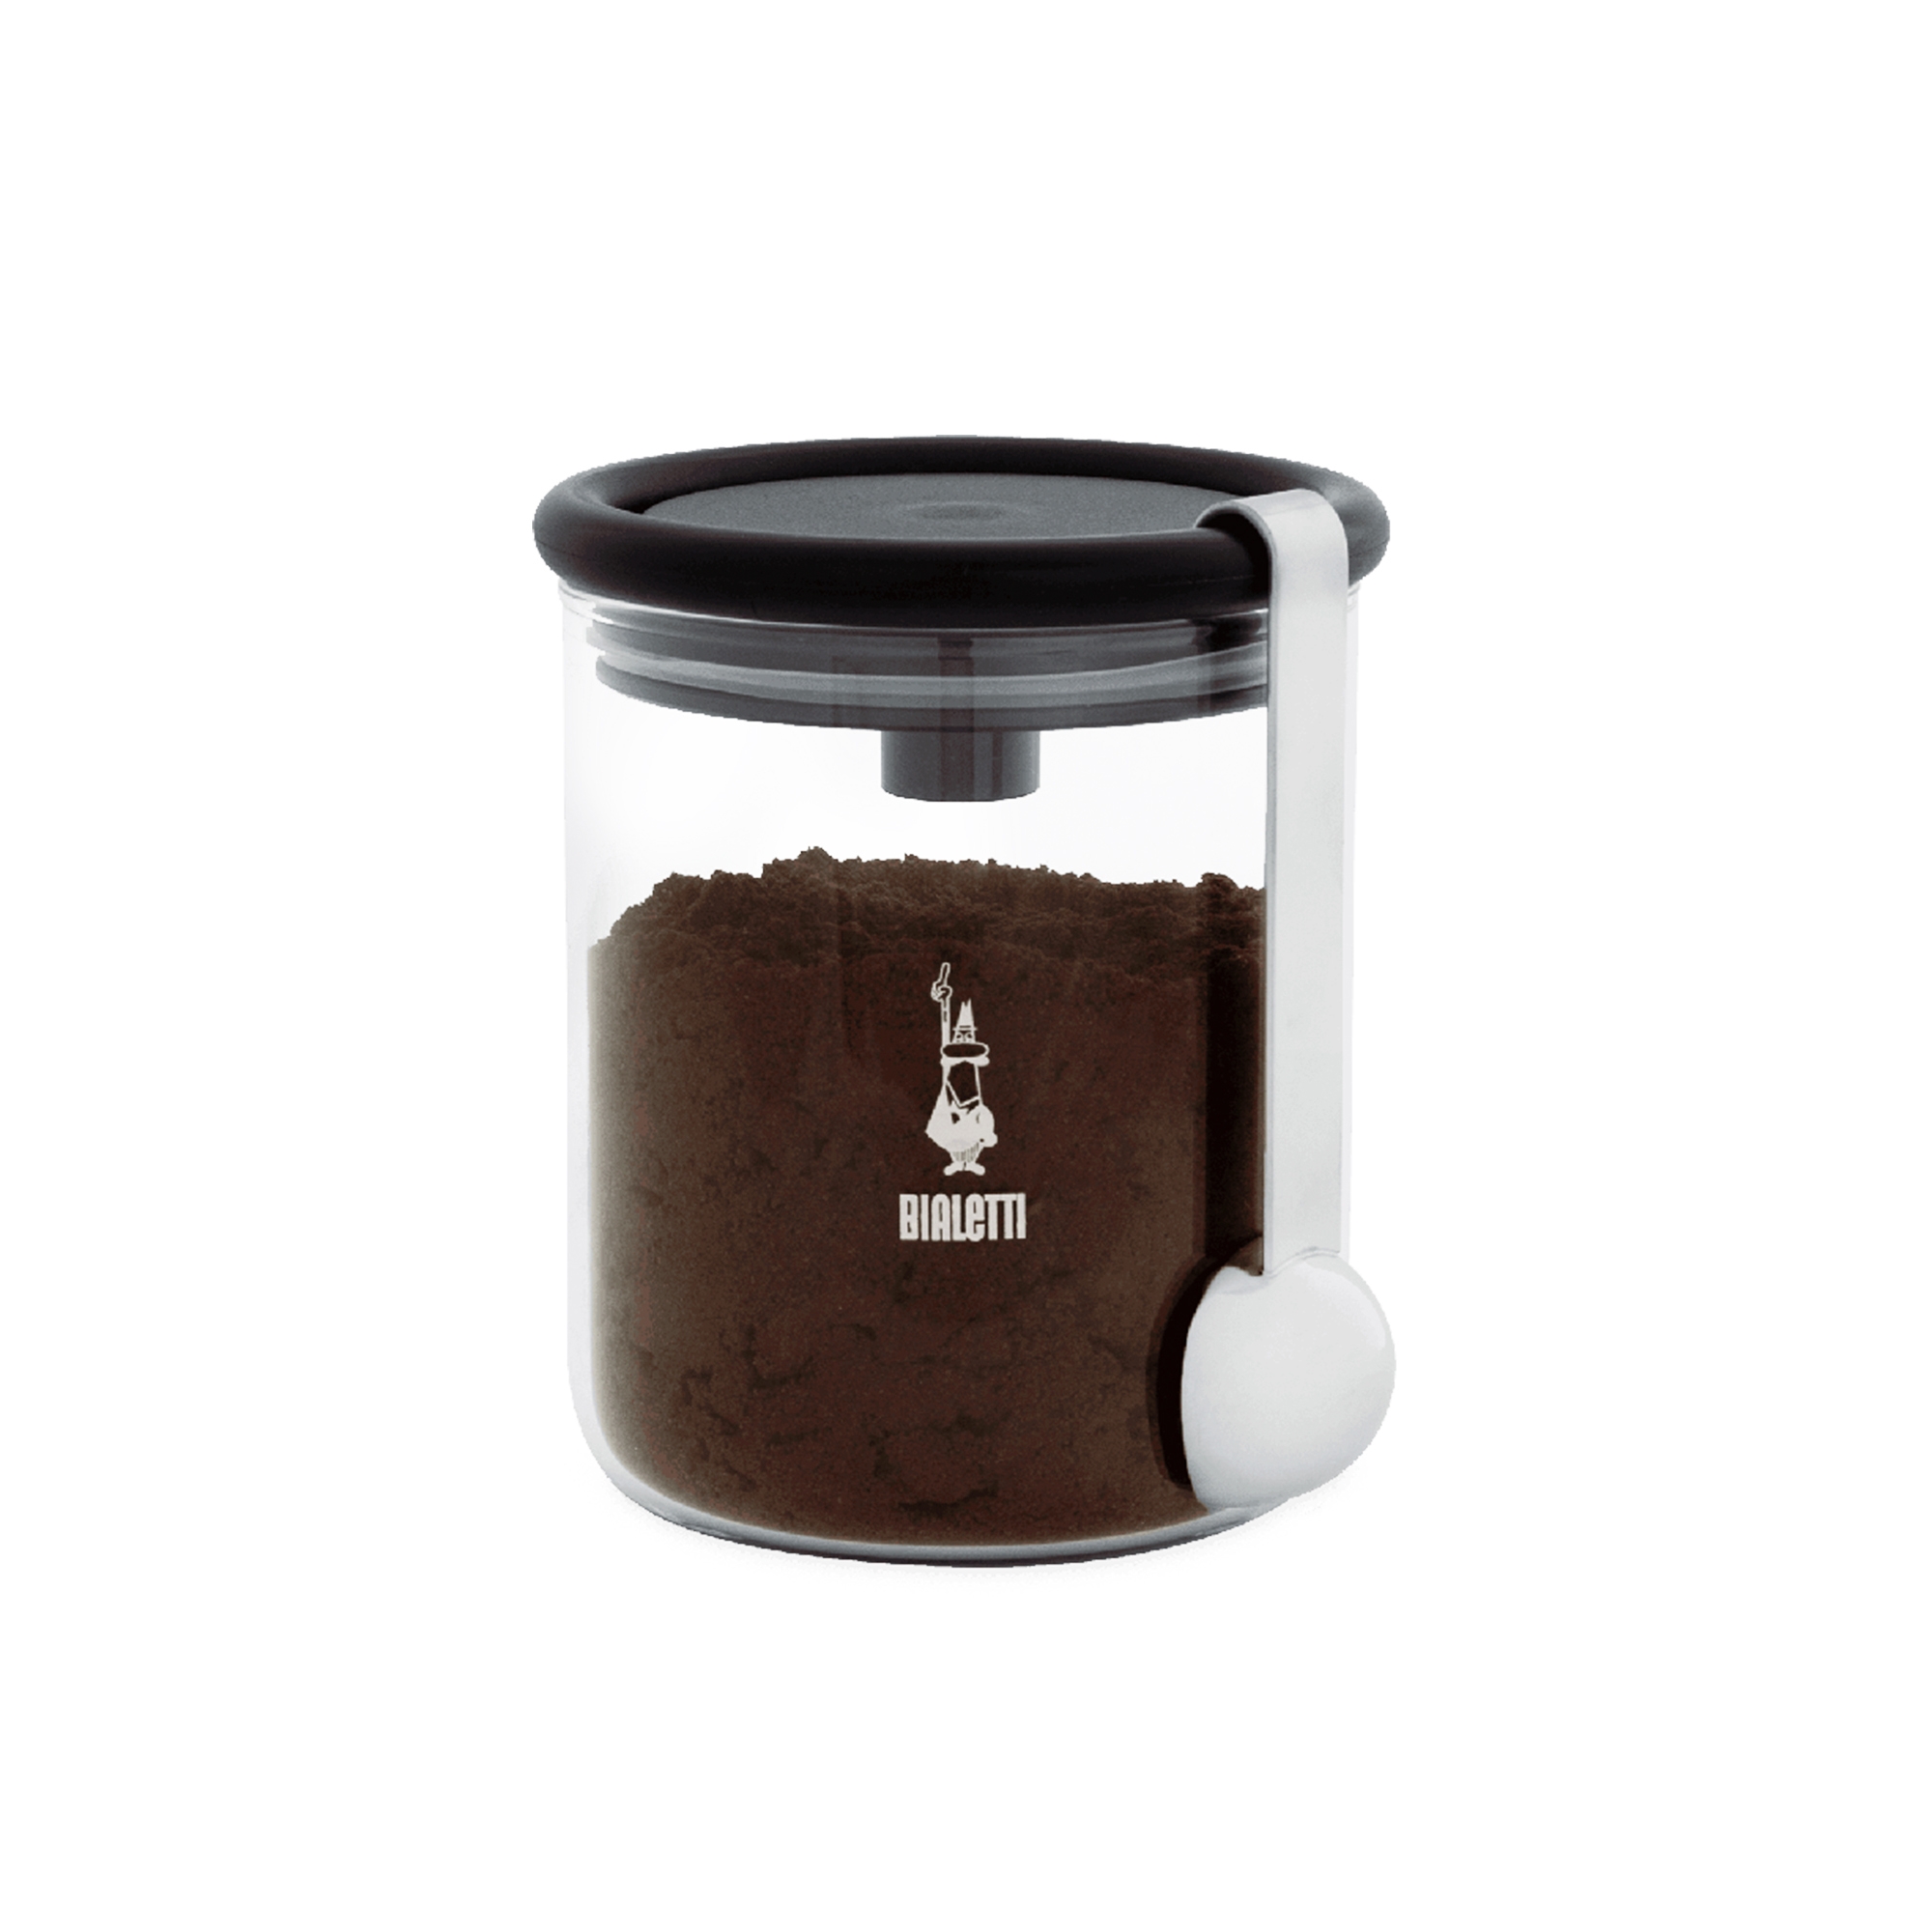 Bialetti Coffee Jar with Moka Top Image 1